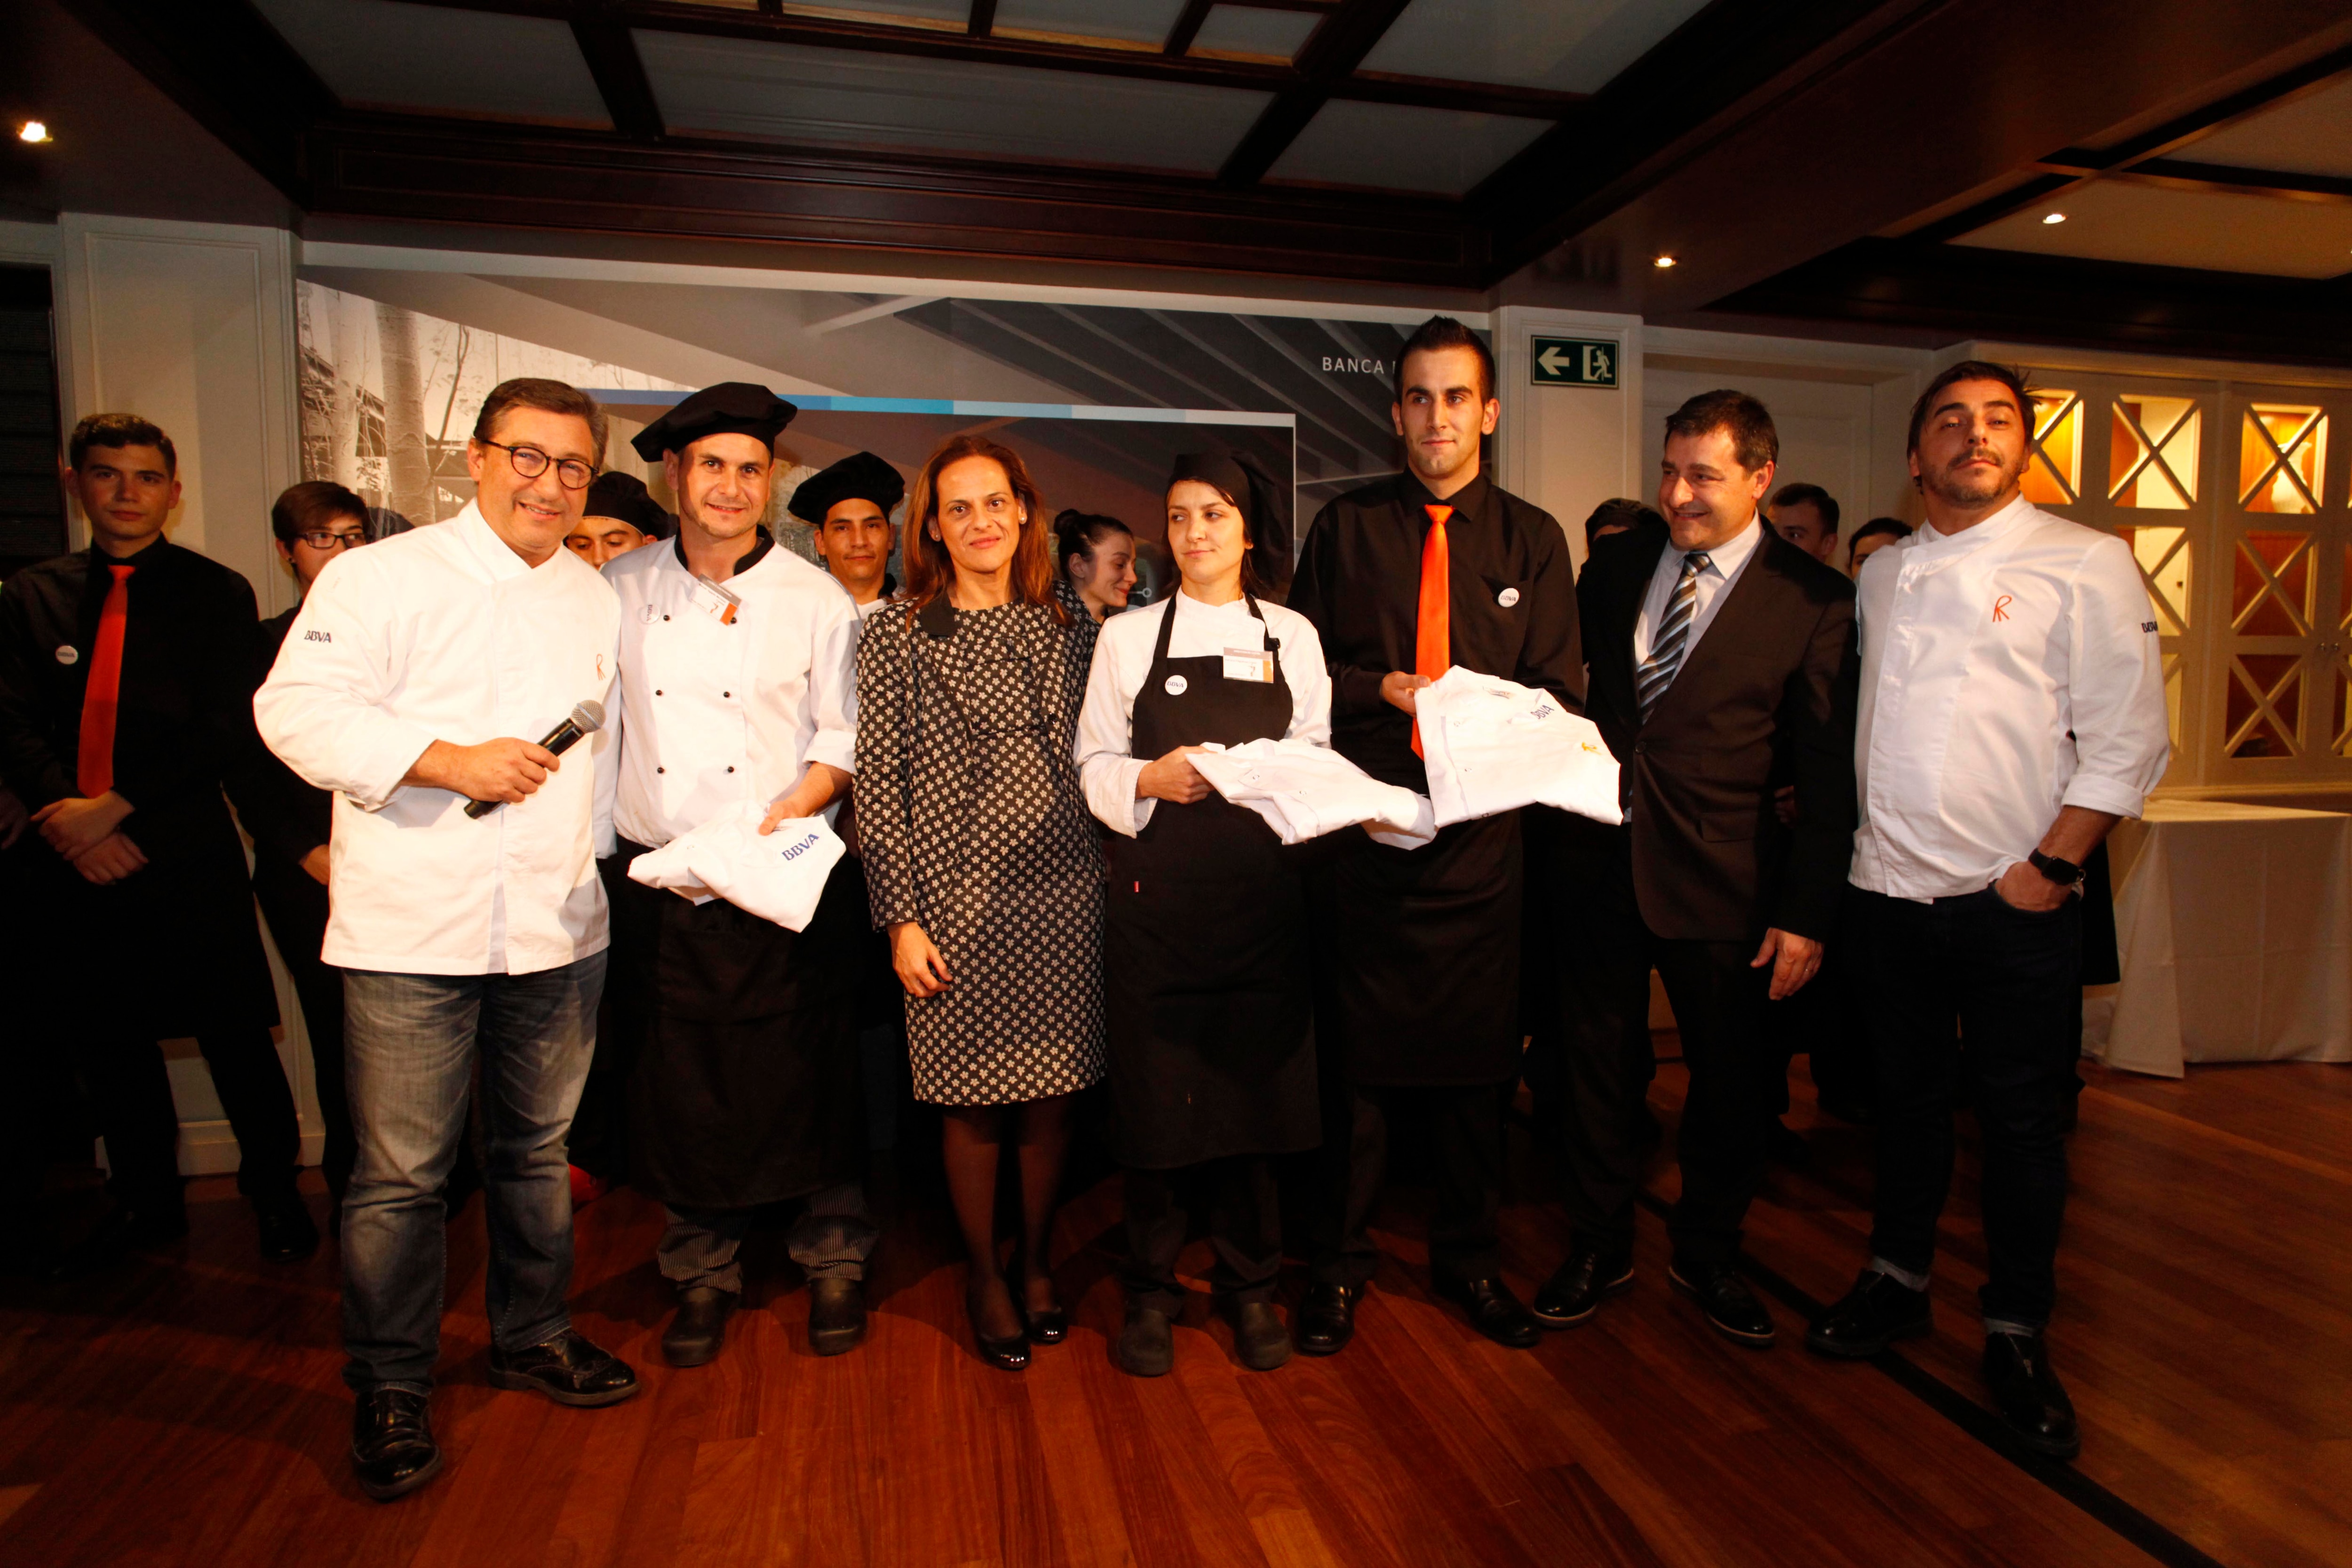 Fotografía de los hermanos Roca junto a los ganadores de las becas BBVA y Yolanda Martínez de la DT